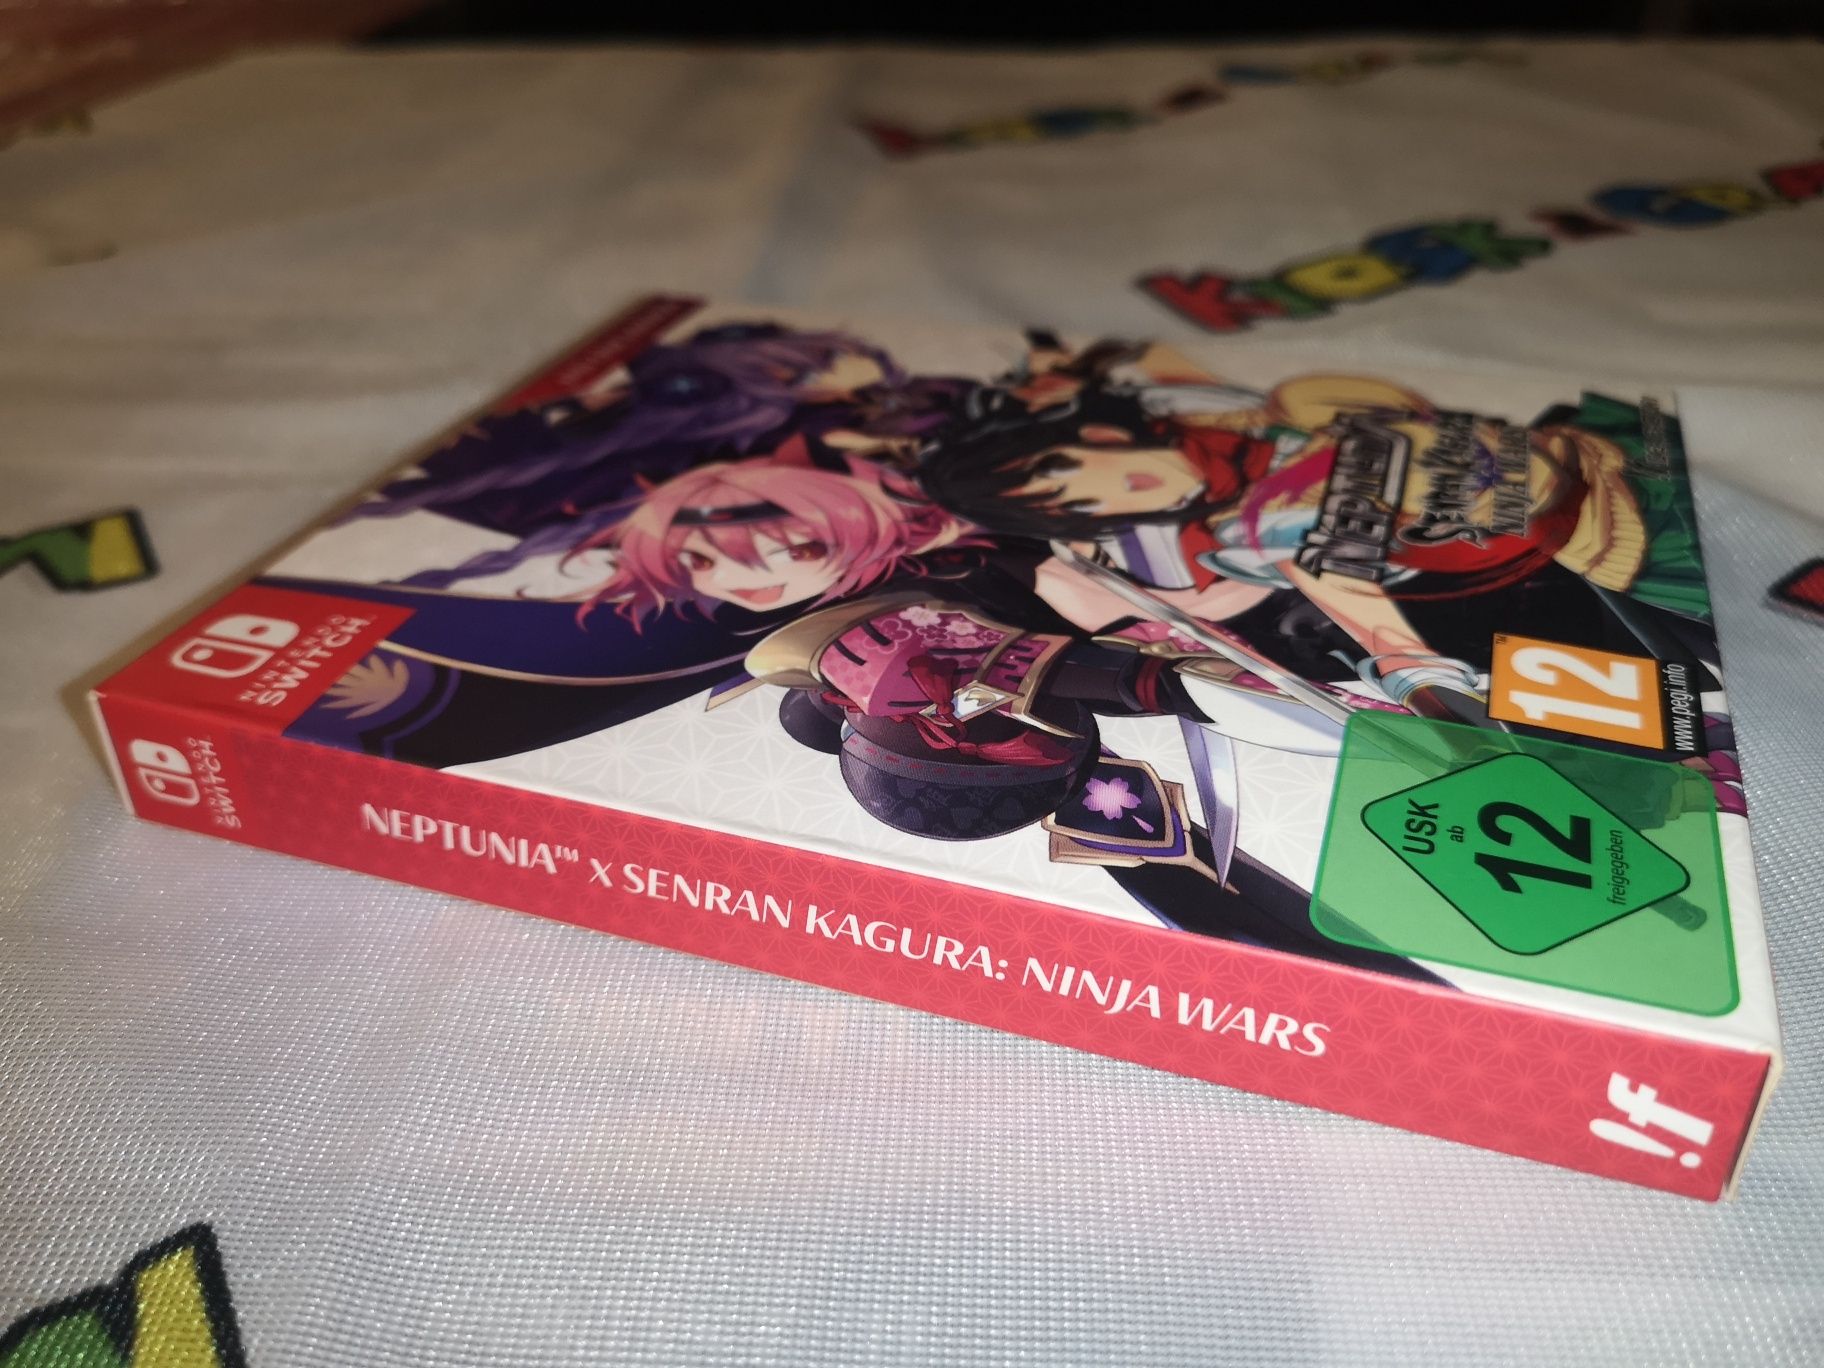 Neptunia Sengan Kagura SWITCH Nintendo gra (wyd kolekcjonerskie)